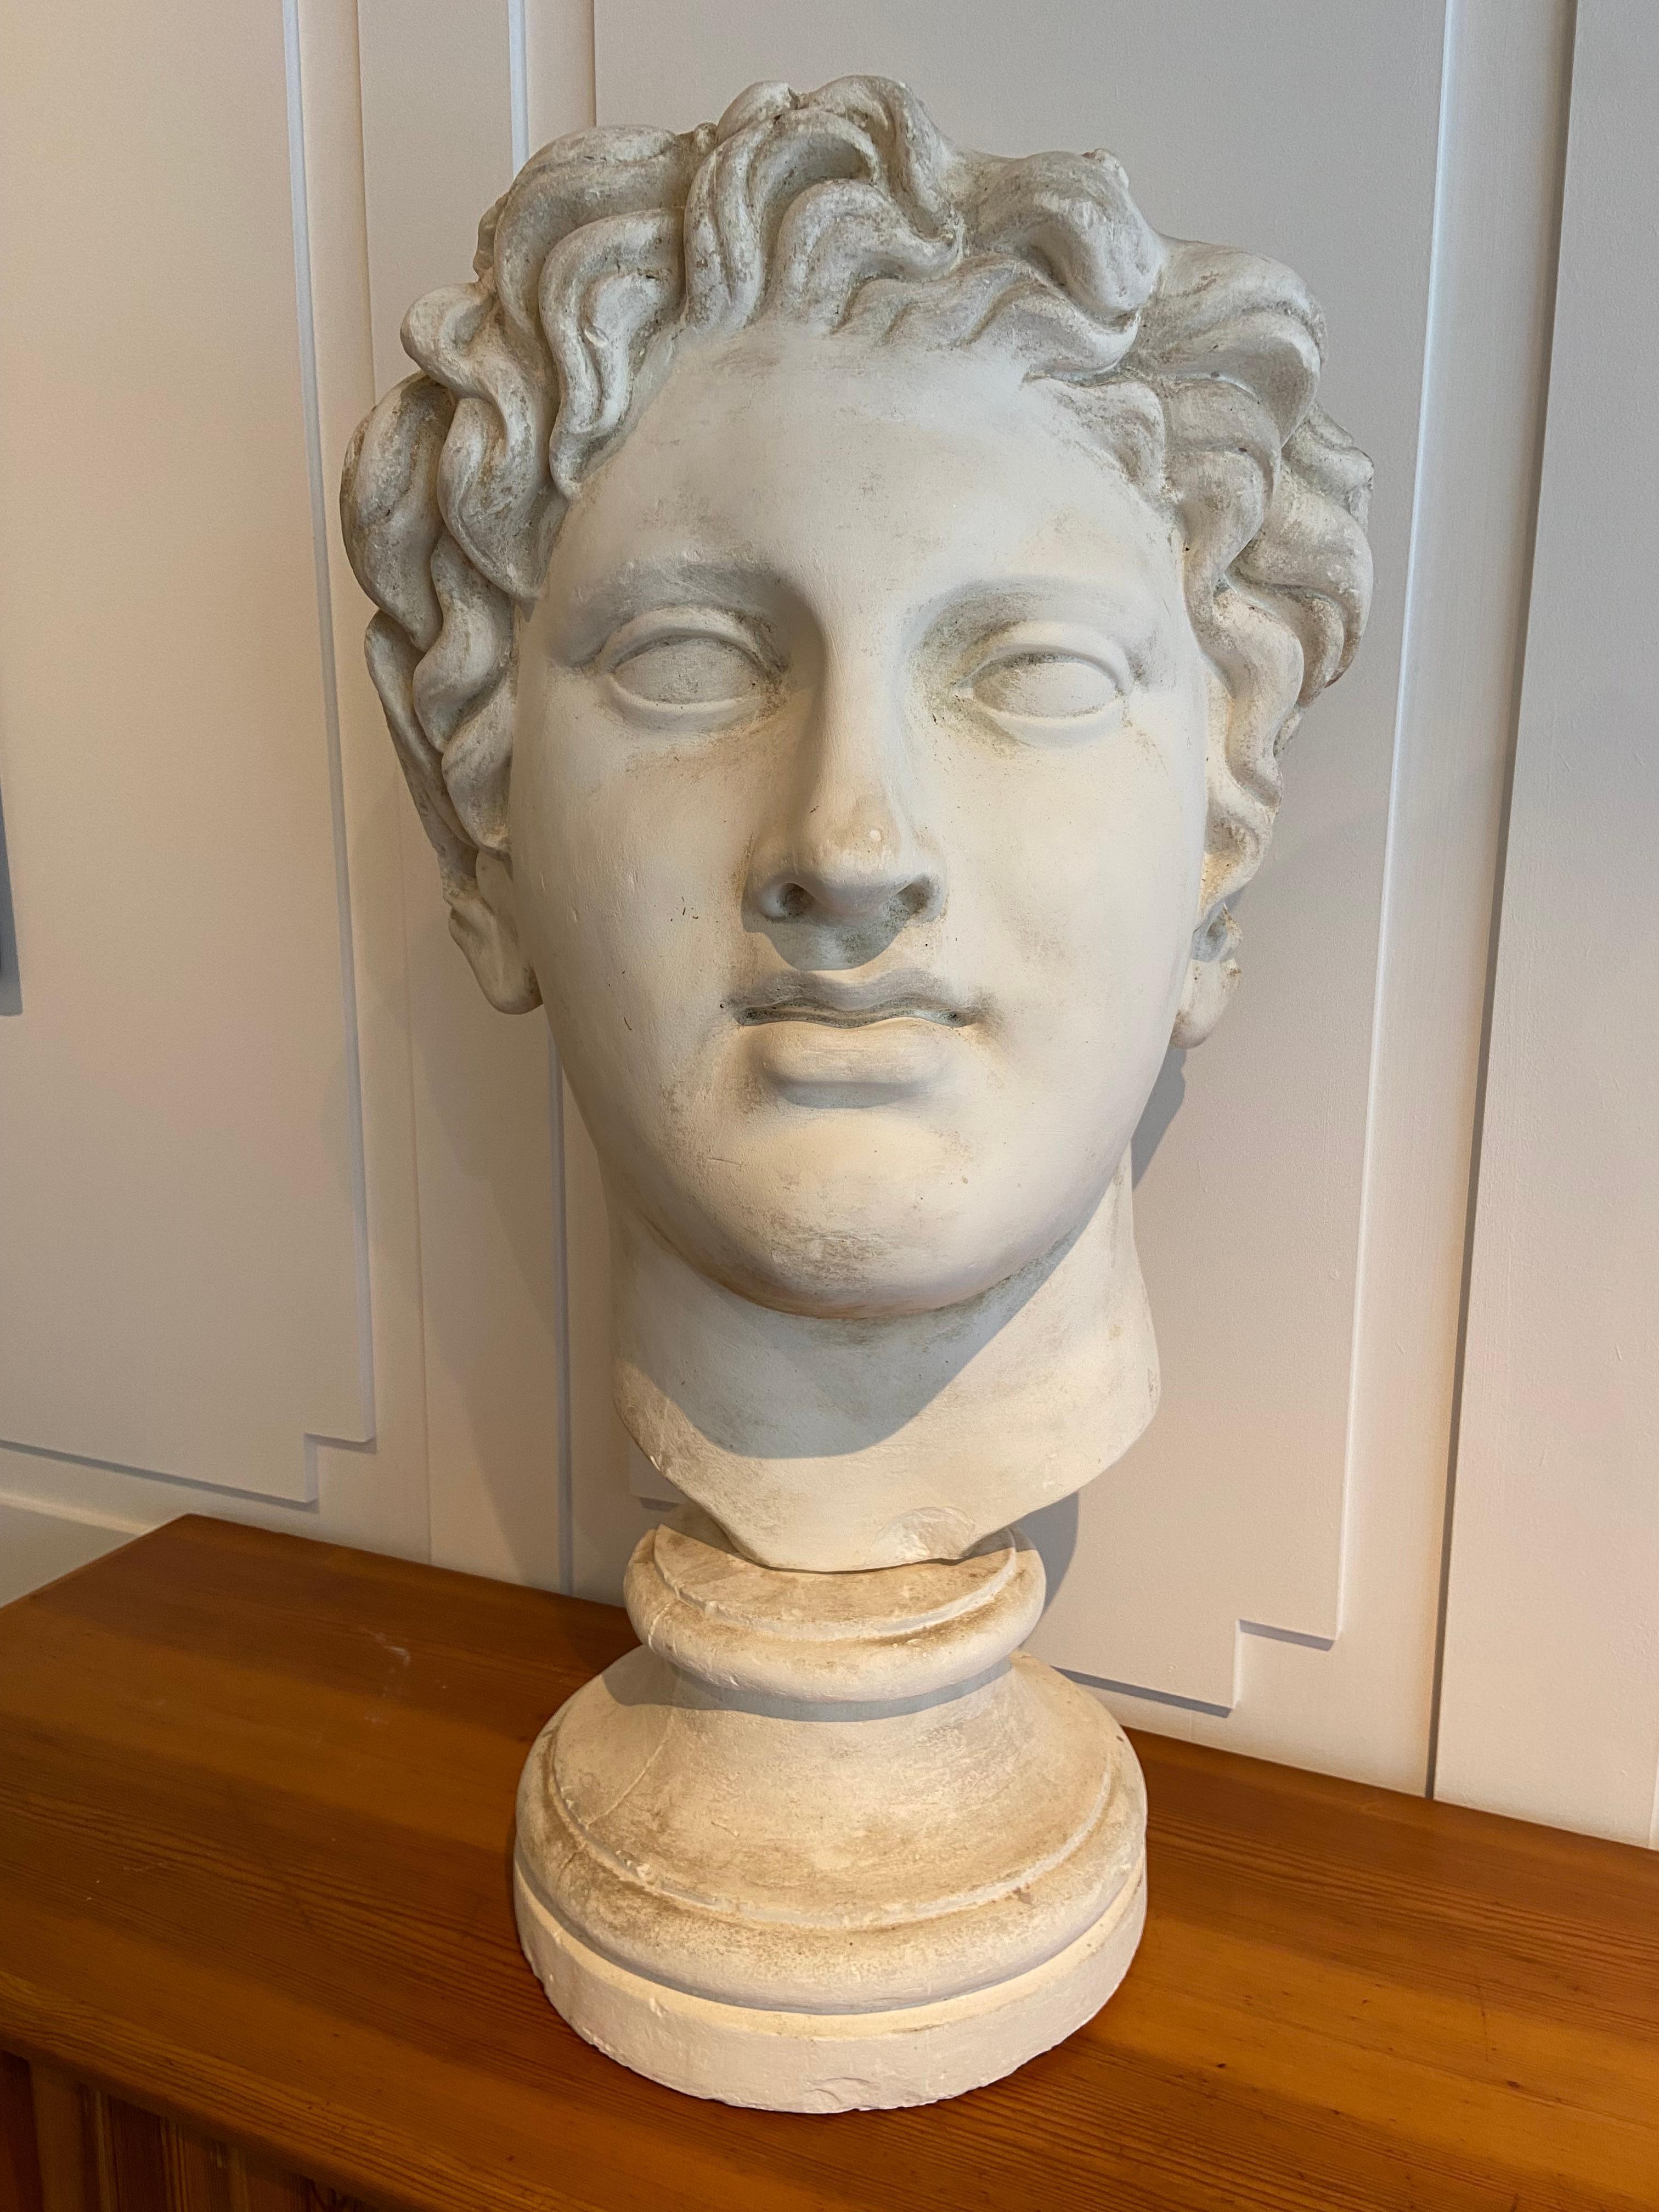 Stuckkopf einer römischen Figur. Signiert auf der Rückseite (unbekannt).
Der Kopf ist vom Sockel getrennt.